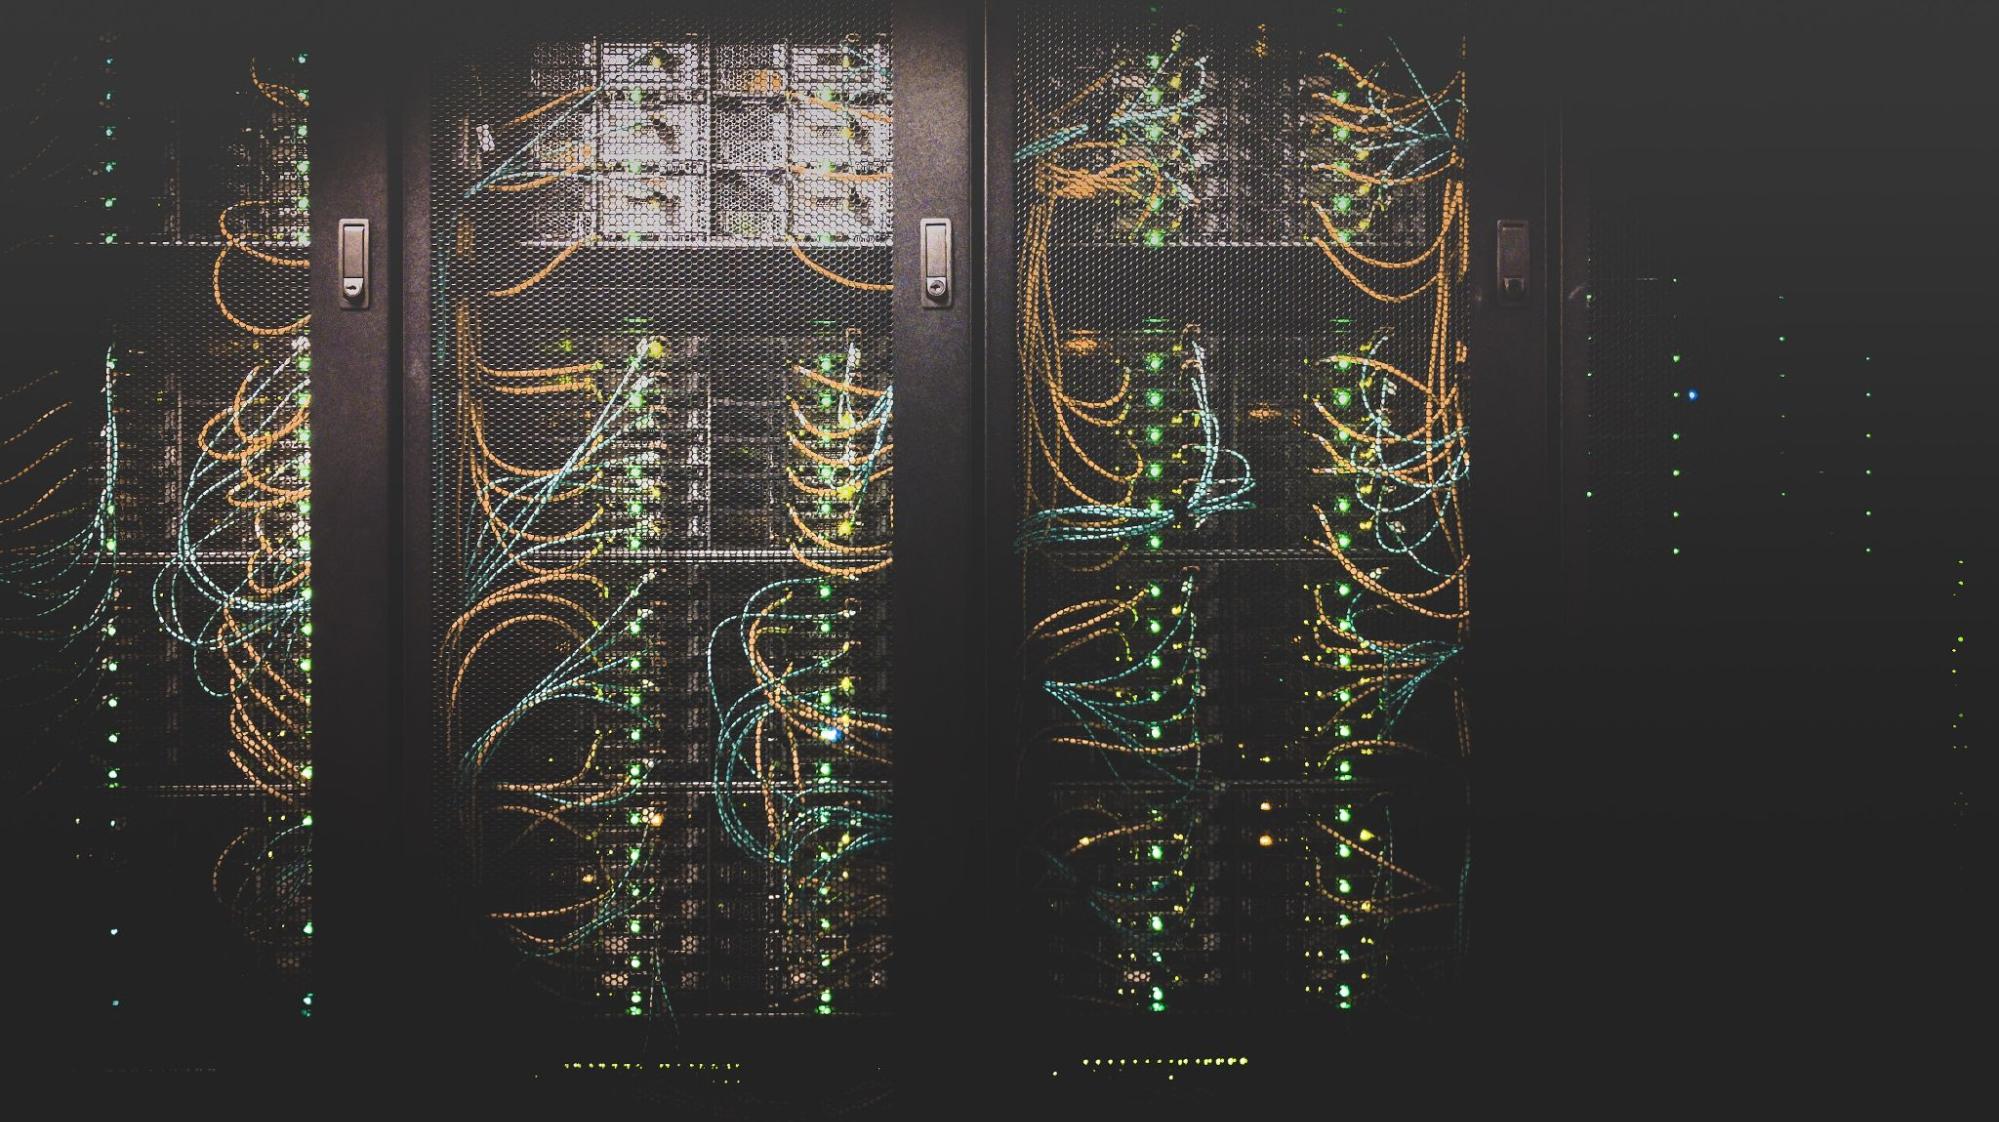 Multiple computer servers behind metal mesh doors